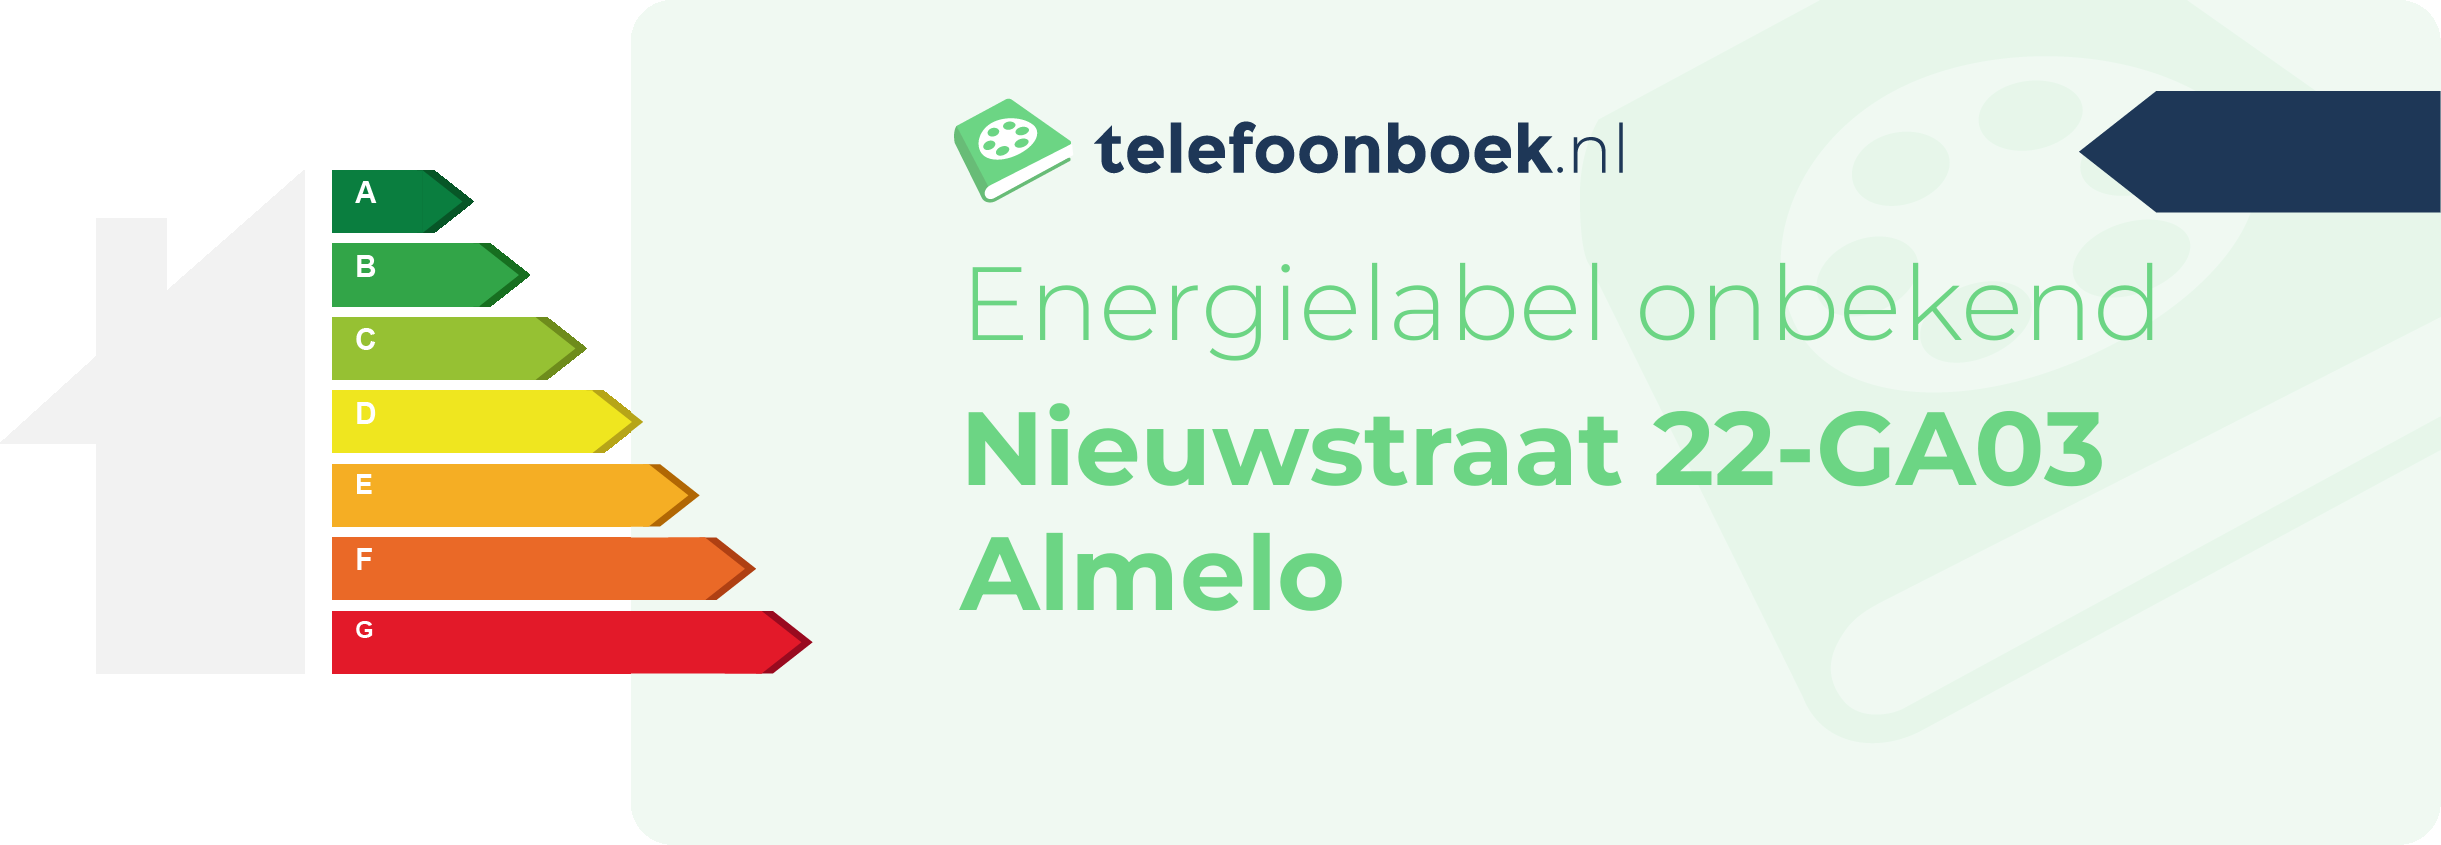 Energielabel Nieuwstraat 22-GA03 Almelo